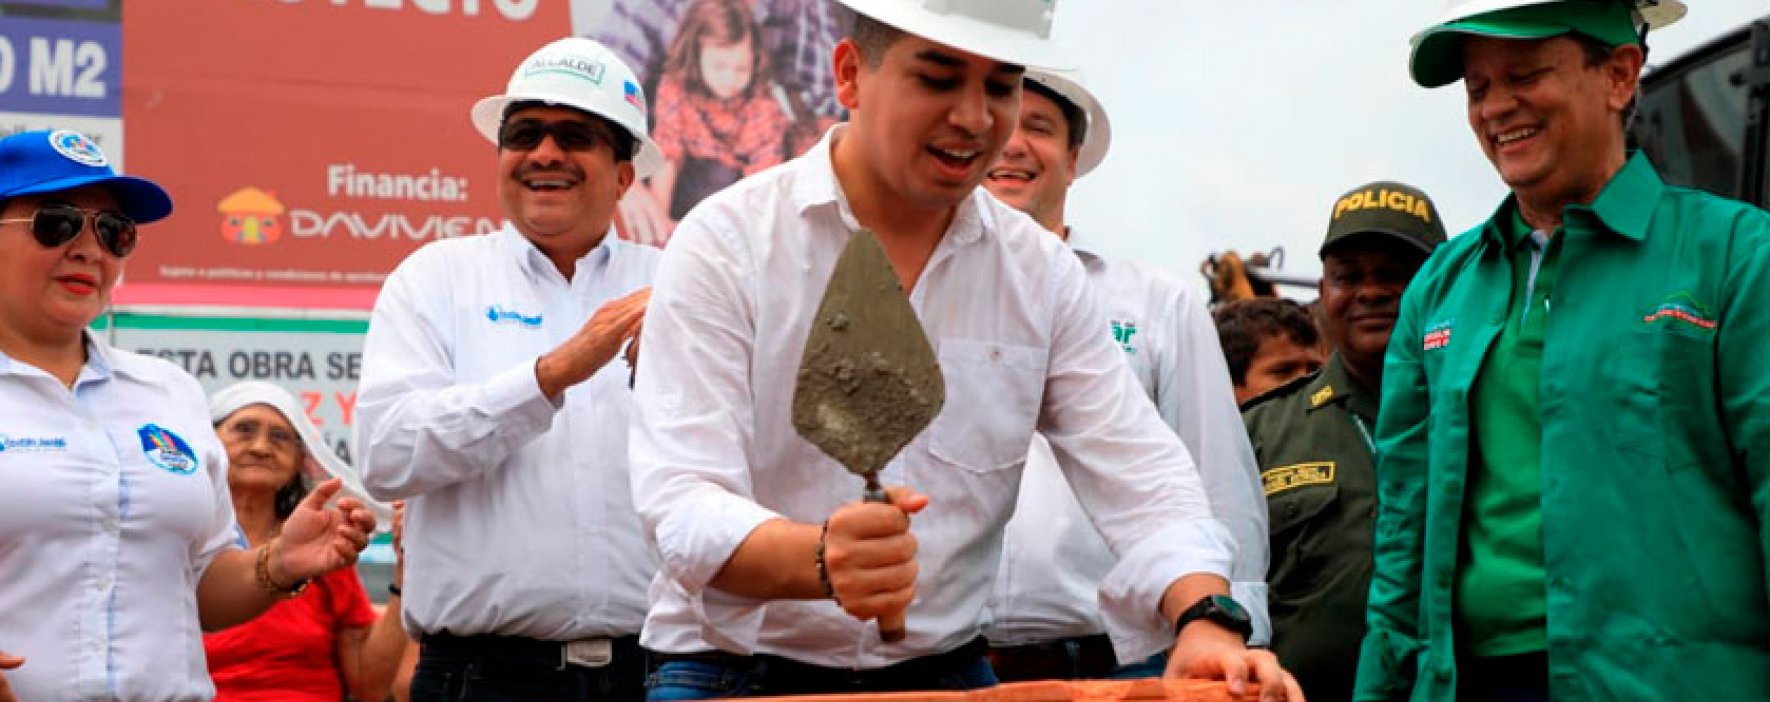 Minvivienda visitó el Cesar para llevar inversiones de vivienda y apoyar la construcción